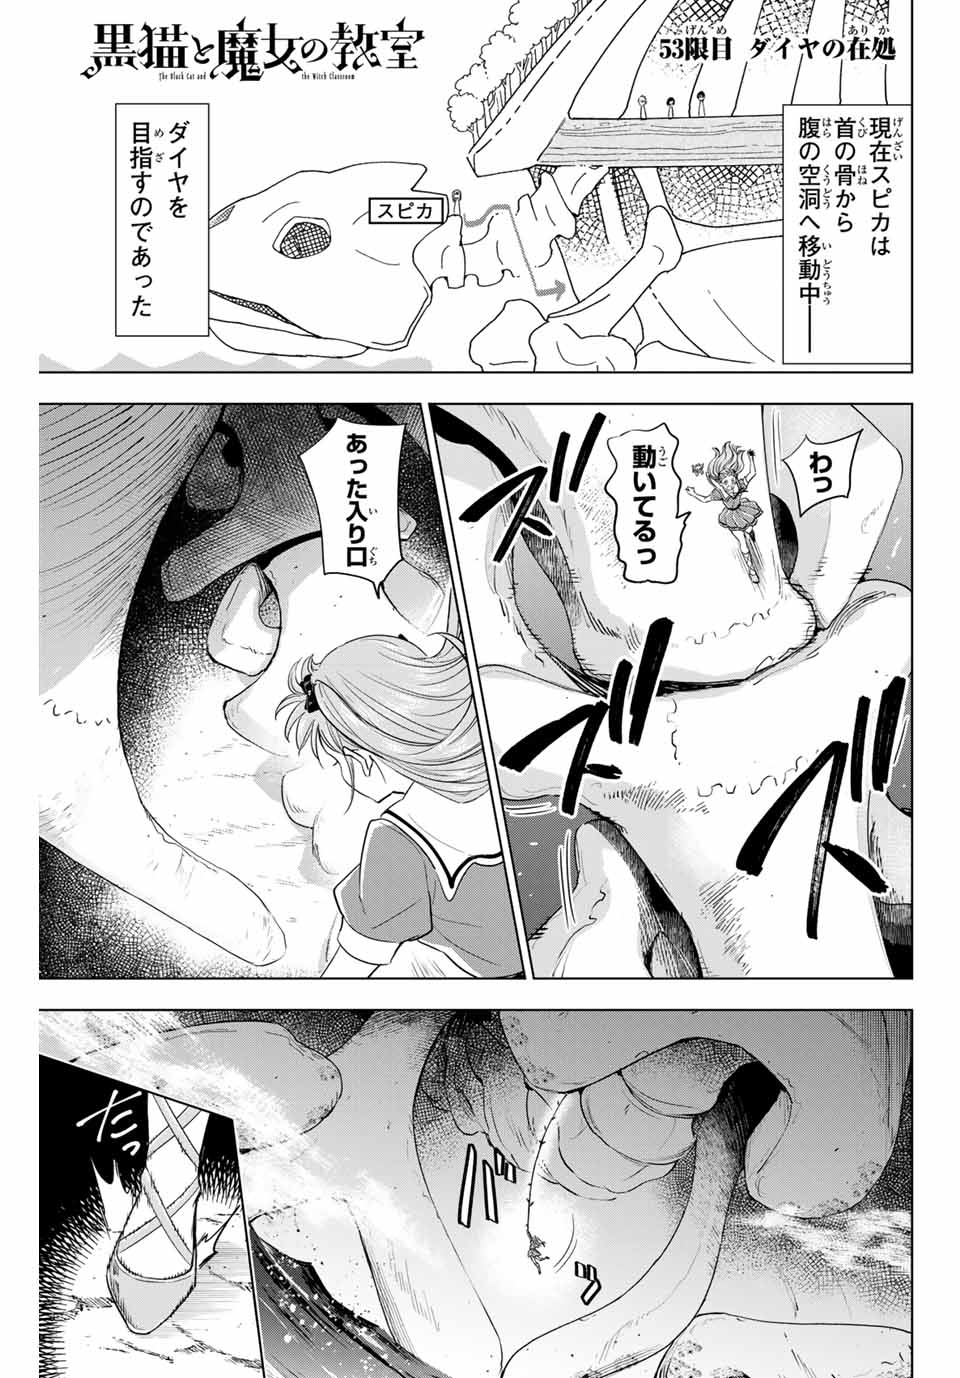 Kuroneko to Majo no Kyoushitsu - Chapter 53 - Page 1